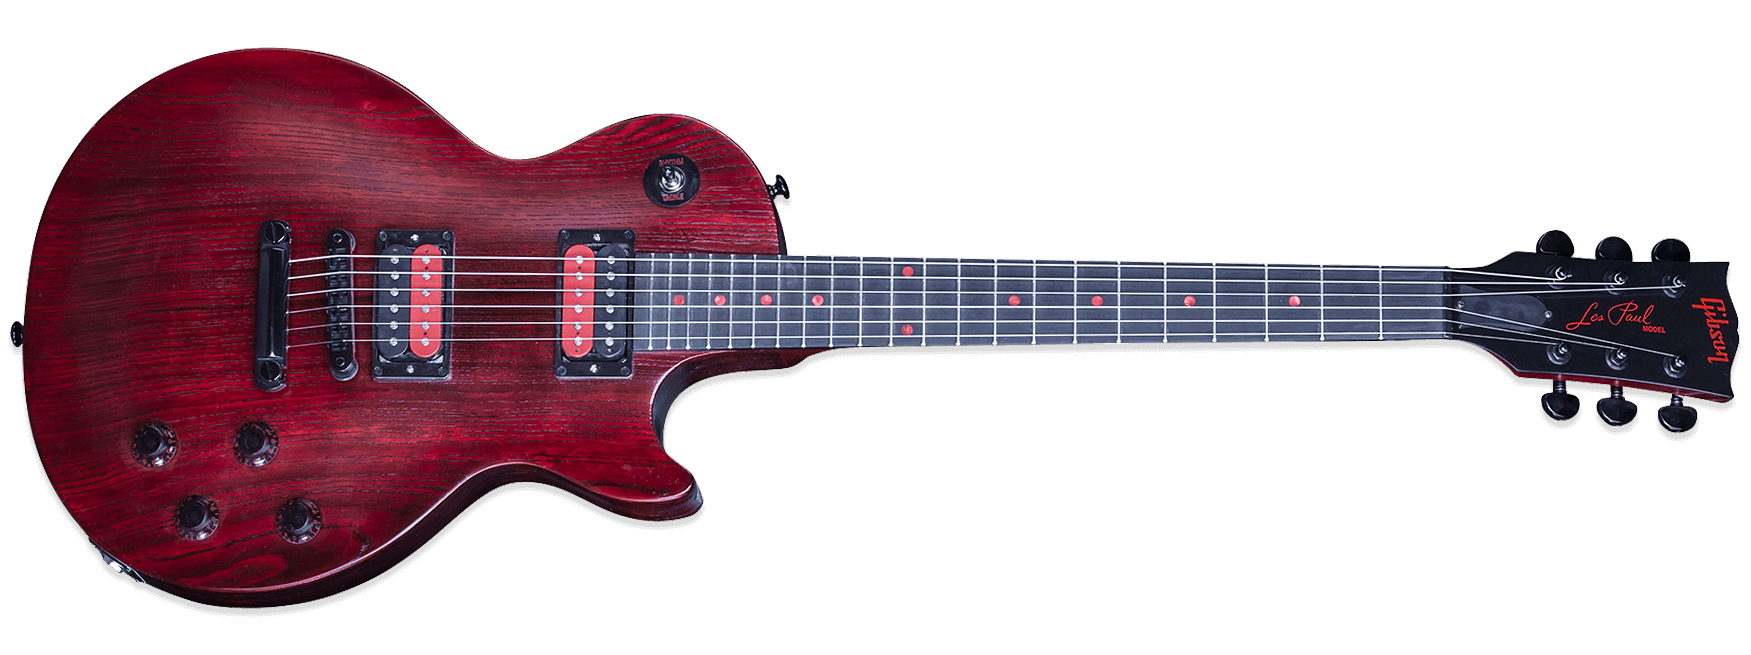 Gibson Les Paul Voodoo 2016